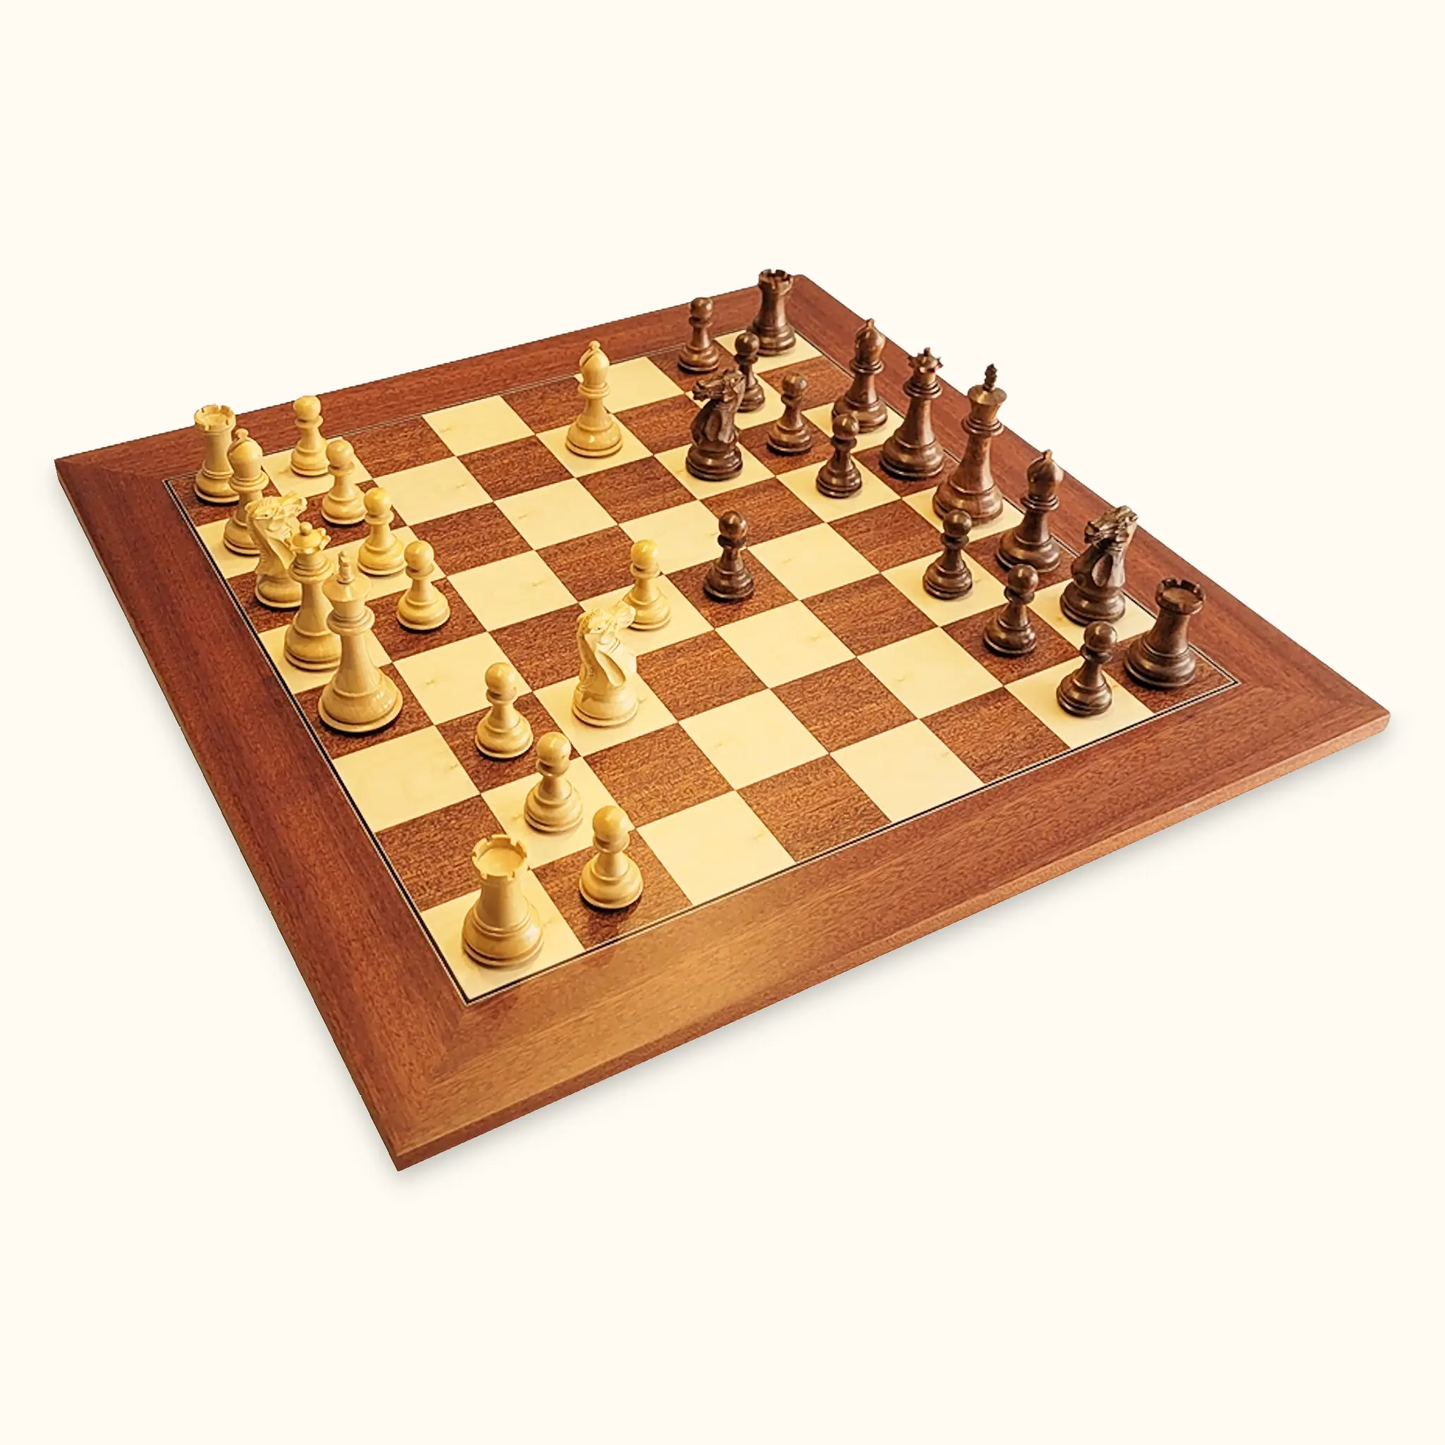 Chess pieces stallion knight acacia on mahogany chessboard diagonal